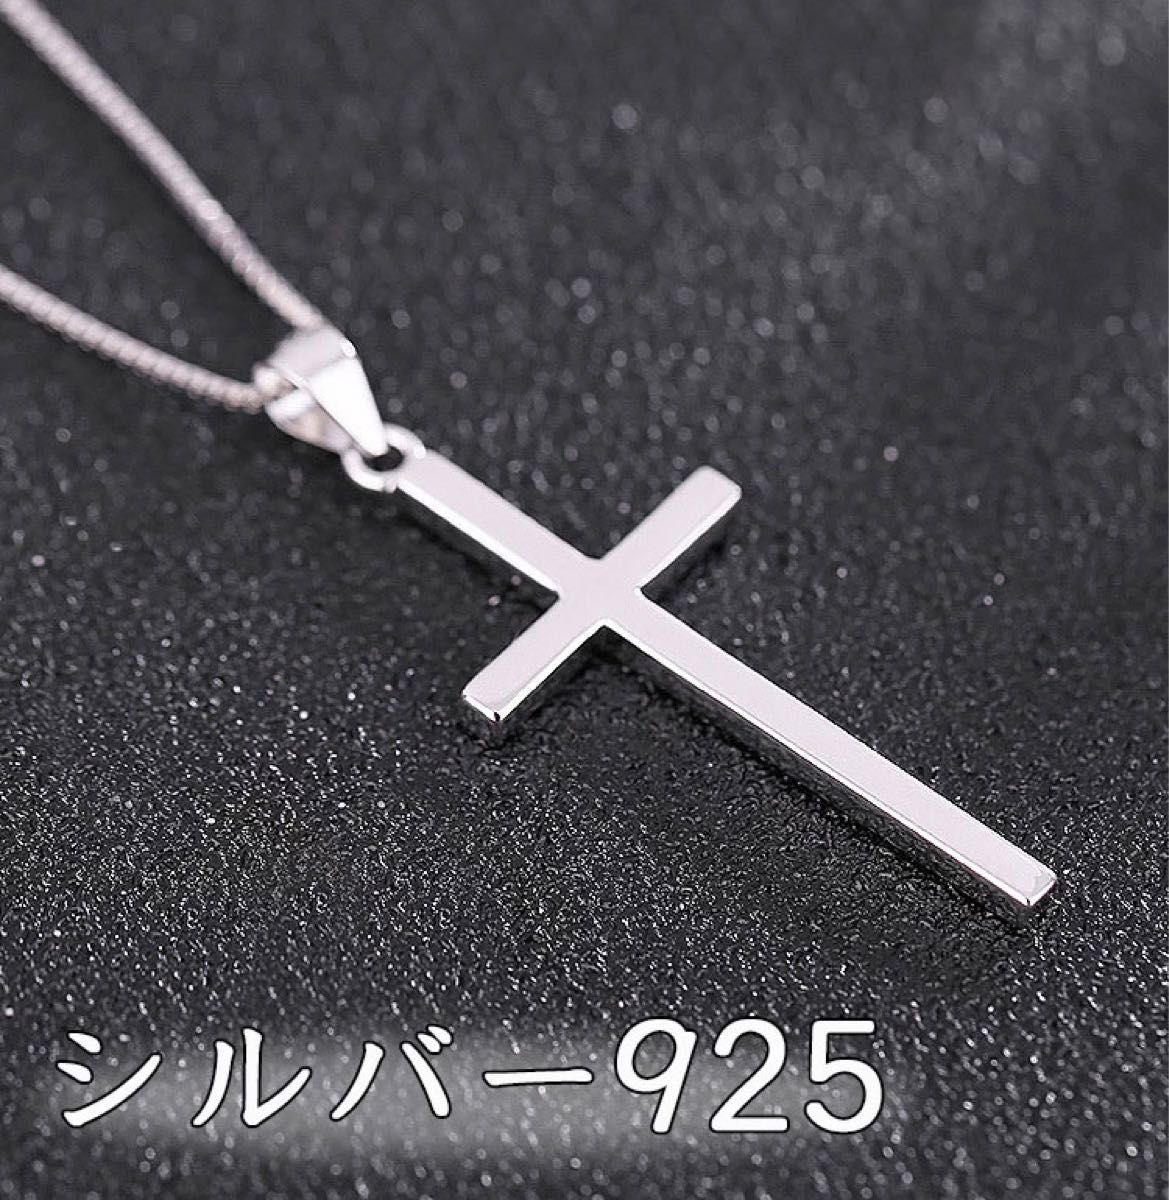 レディース ネックレス クロス 十字 十字架 レディース シルバー 銀 S925 ペンダント 大人 おしゃれ シンプル デザイン